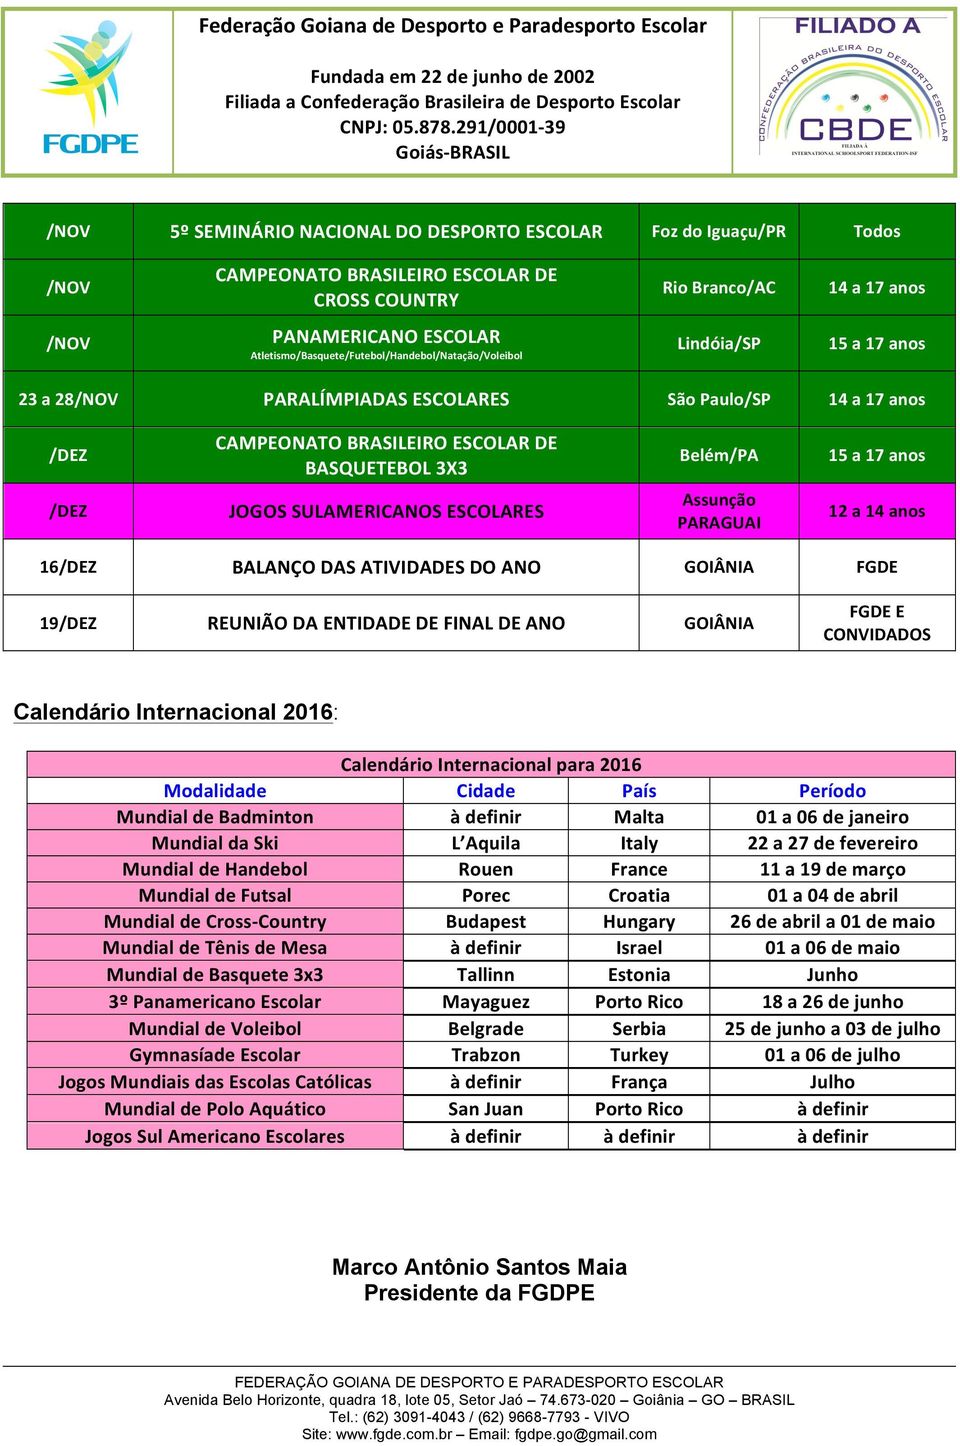 ENTIDADE DE FINAL DE ANO FGDE E CONVIDADOS Calendário Internacional 2016: Calendário Internacional para 2016 Modalidade Cidade País Período Mundial de Badminton à definir Malta 01 a 06 de janeiro